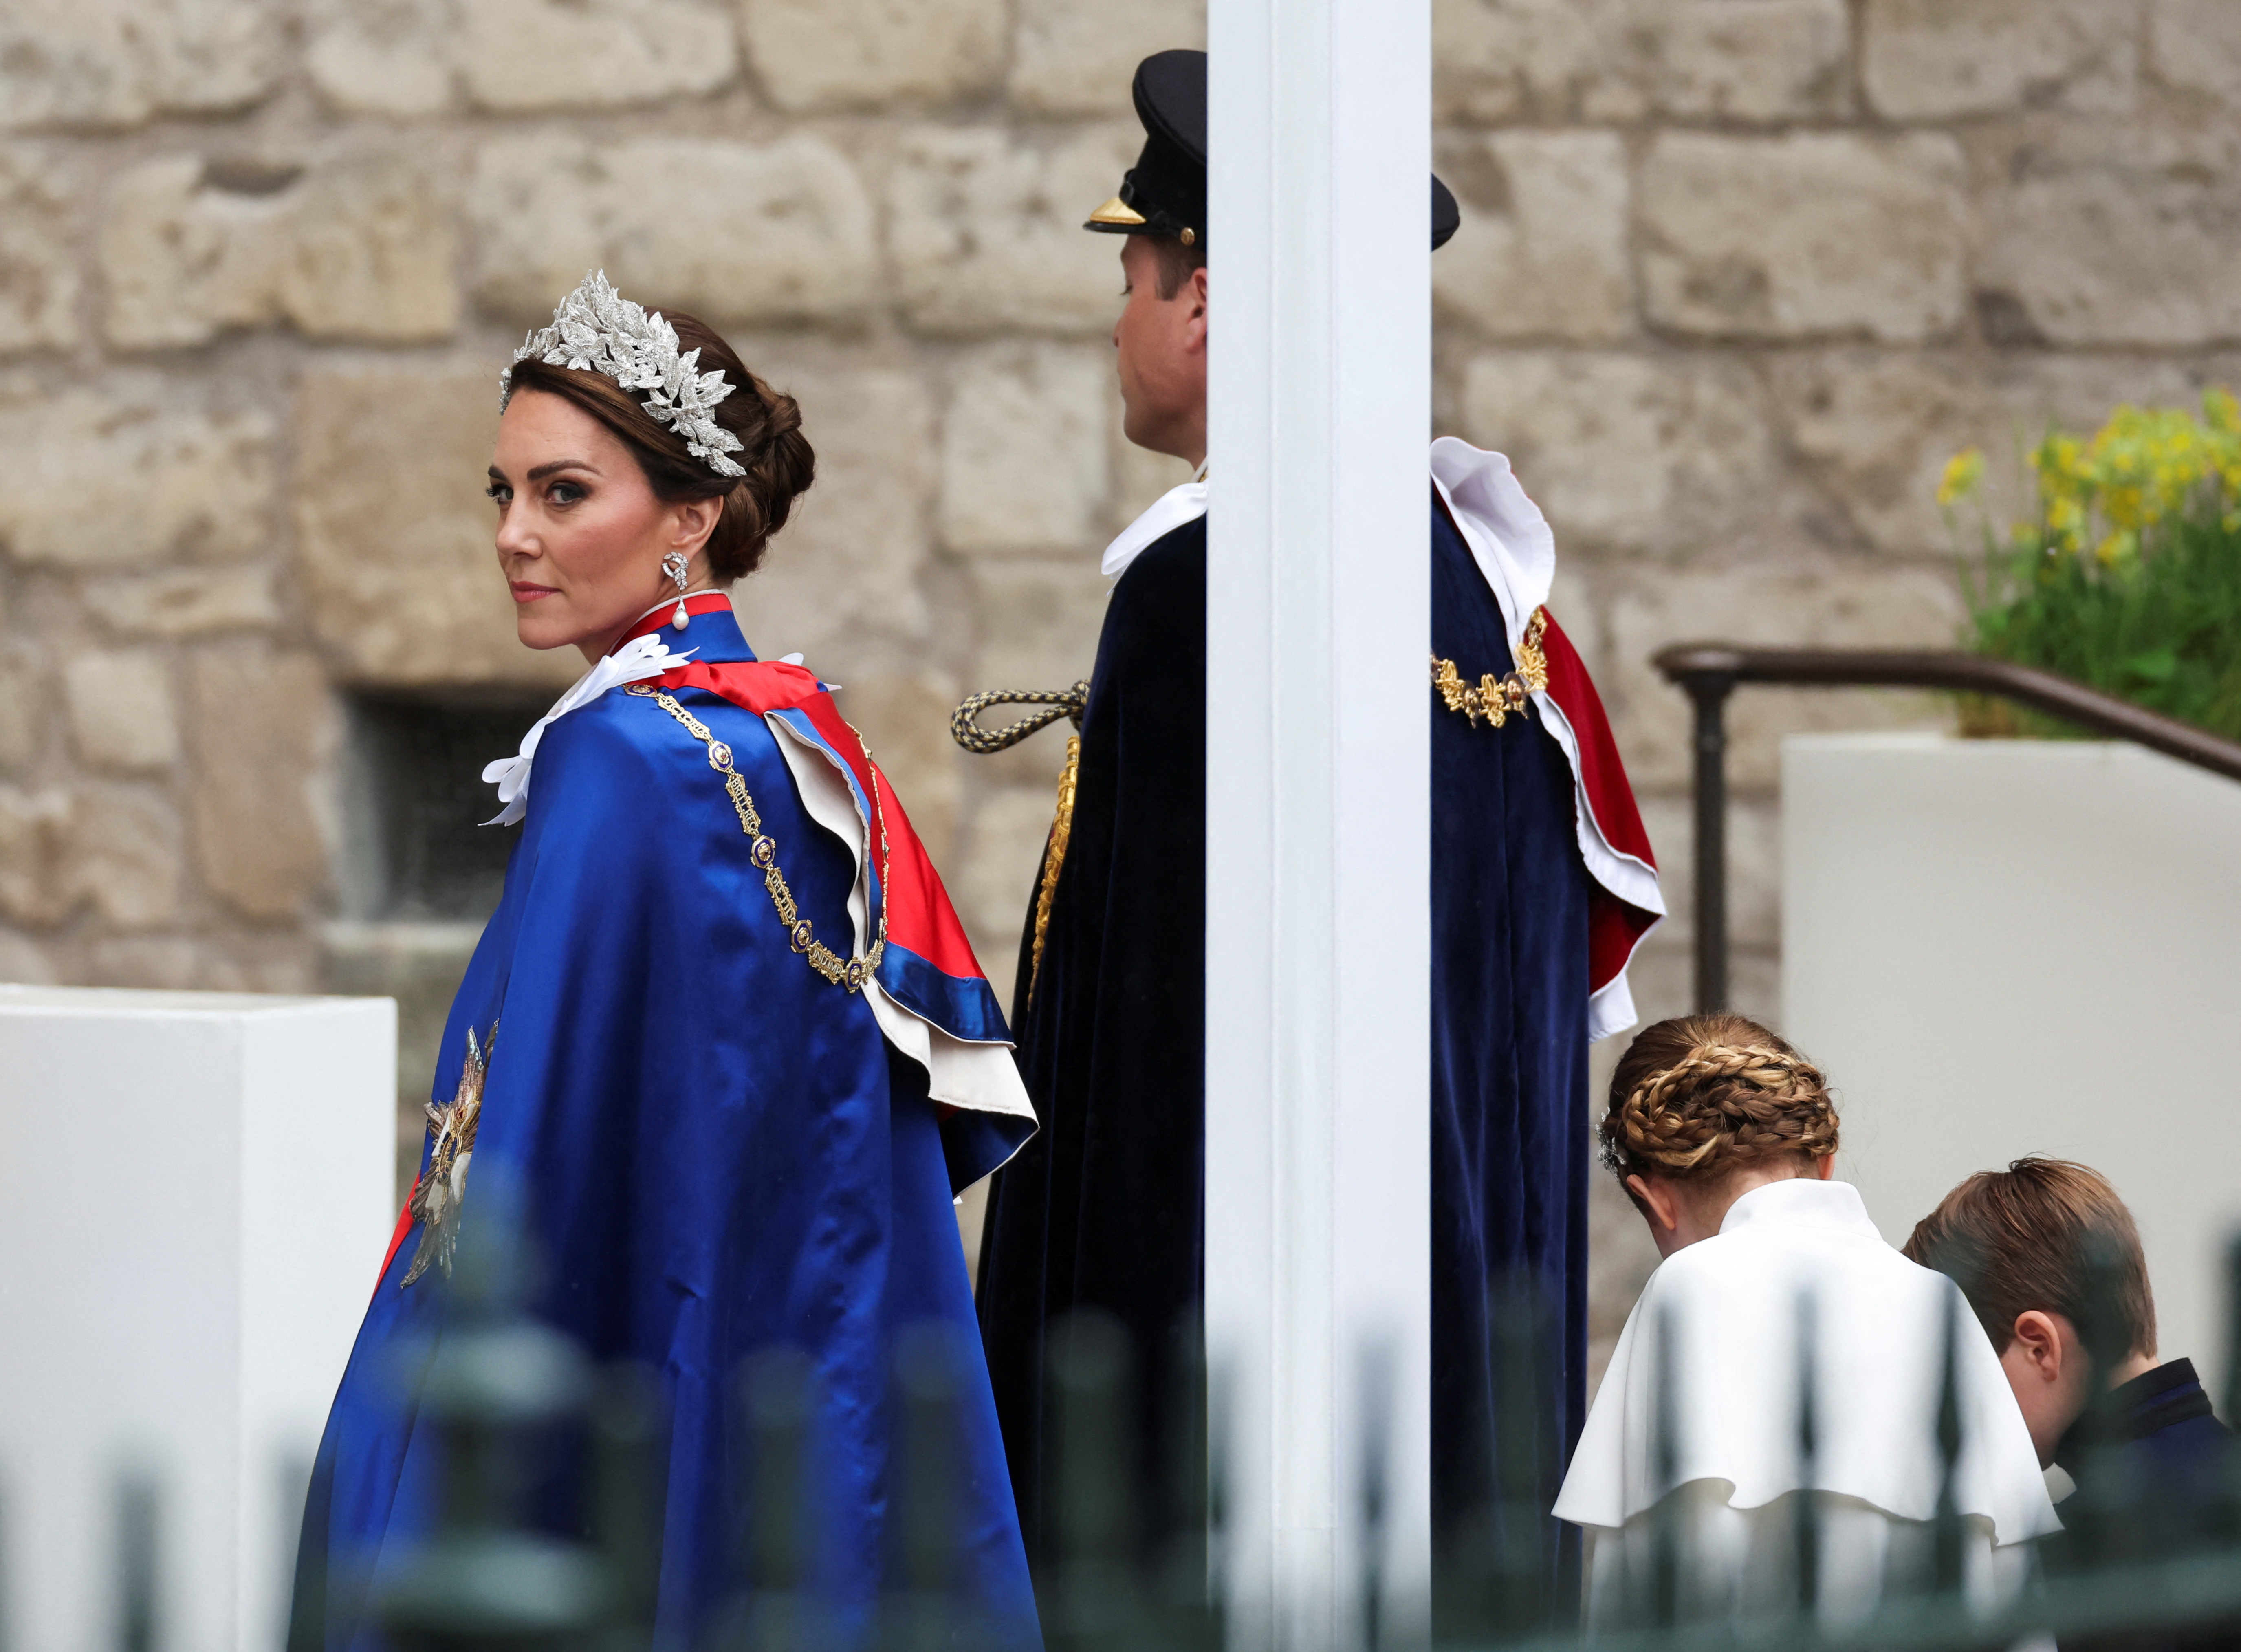 El príncipe británico William y Kate, princesa de Gales, llegan para asistir a la ceremonia de coronación del rey británico Carlos y la reina Camila en la Abadía de Westminster, en Londres, Gran Bretaña, el 6 de mayo de 2023. REUTERS/Henry Nicholls